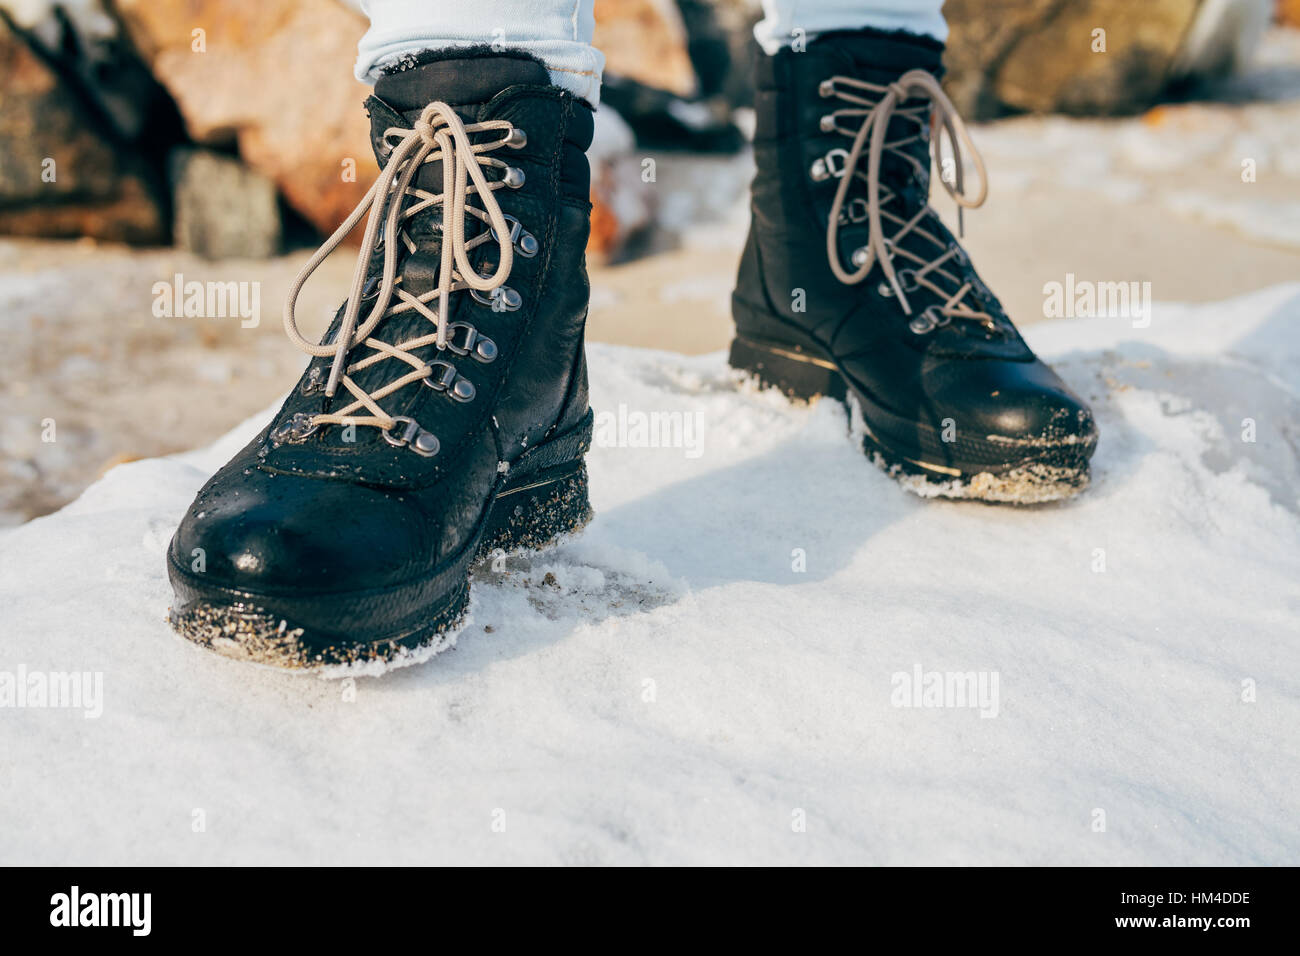 Les pieds dans les bottes d'hiver de haut standing dans la neige close-up Banque D'Images